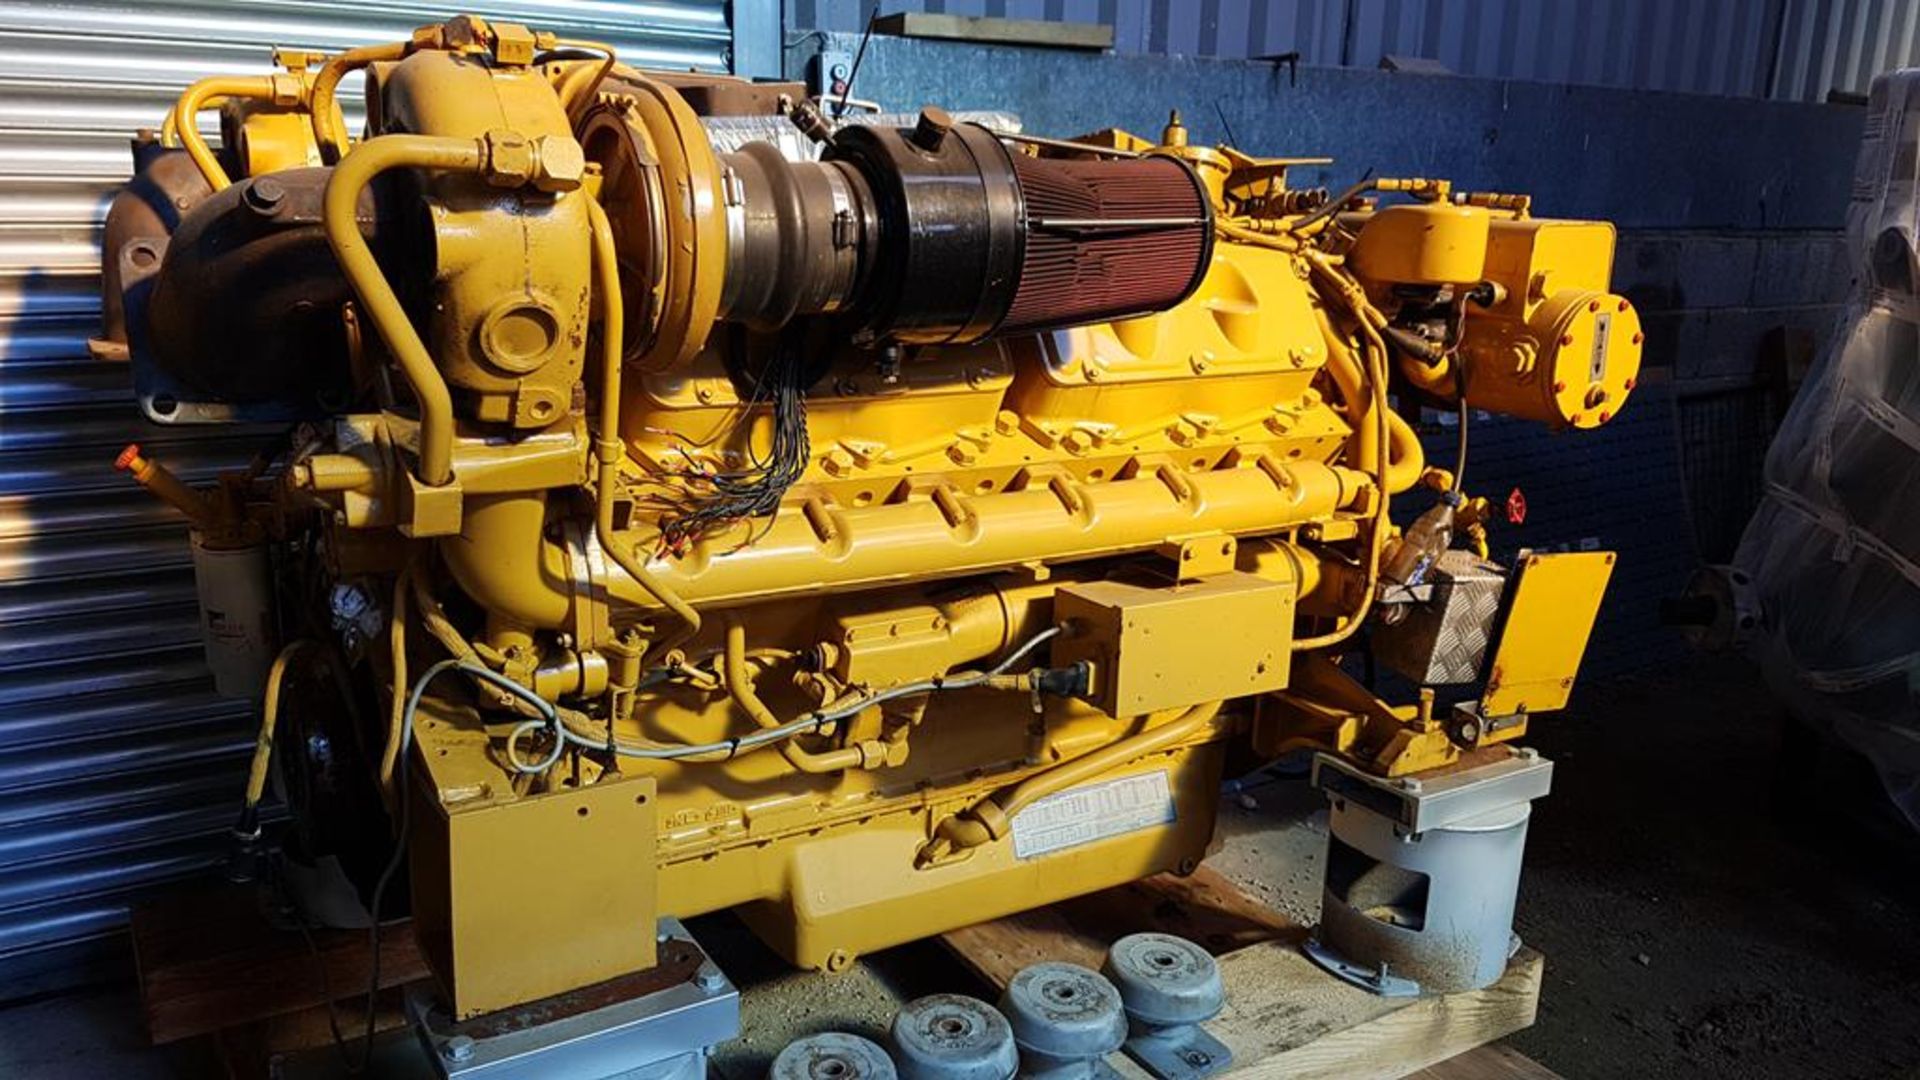 * Caterpillar Type 3412, 1250HP, Marine Diesel Engine